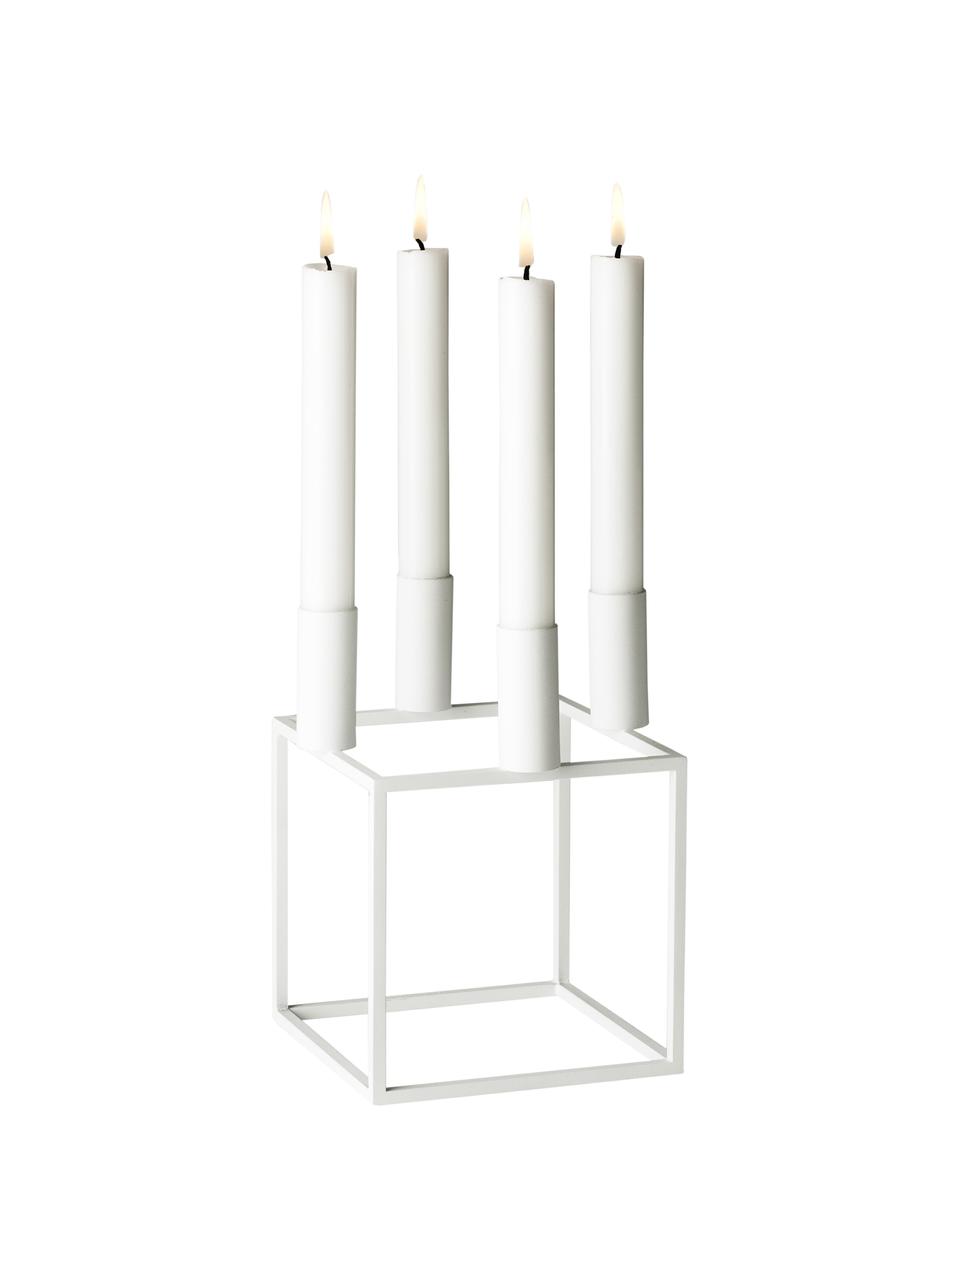 Kerzenhalter Kubus in Weiß, Stahl, lackiert, Weiß, B 14 x H 20 cm